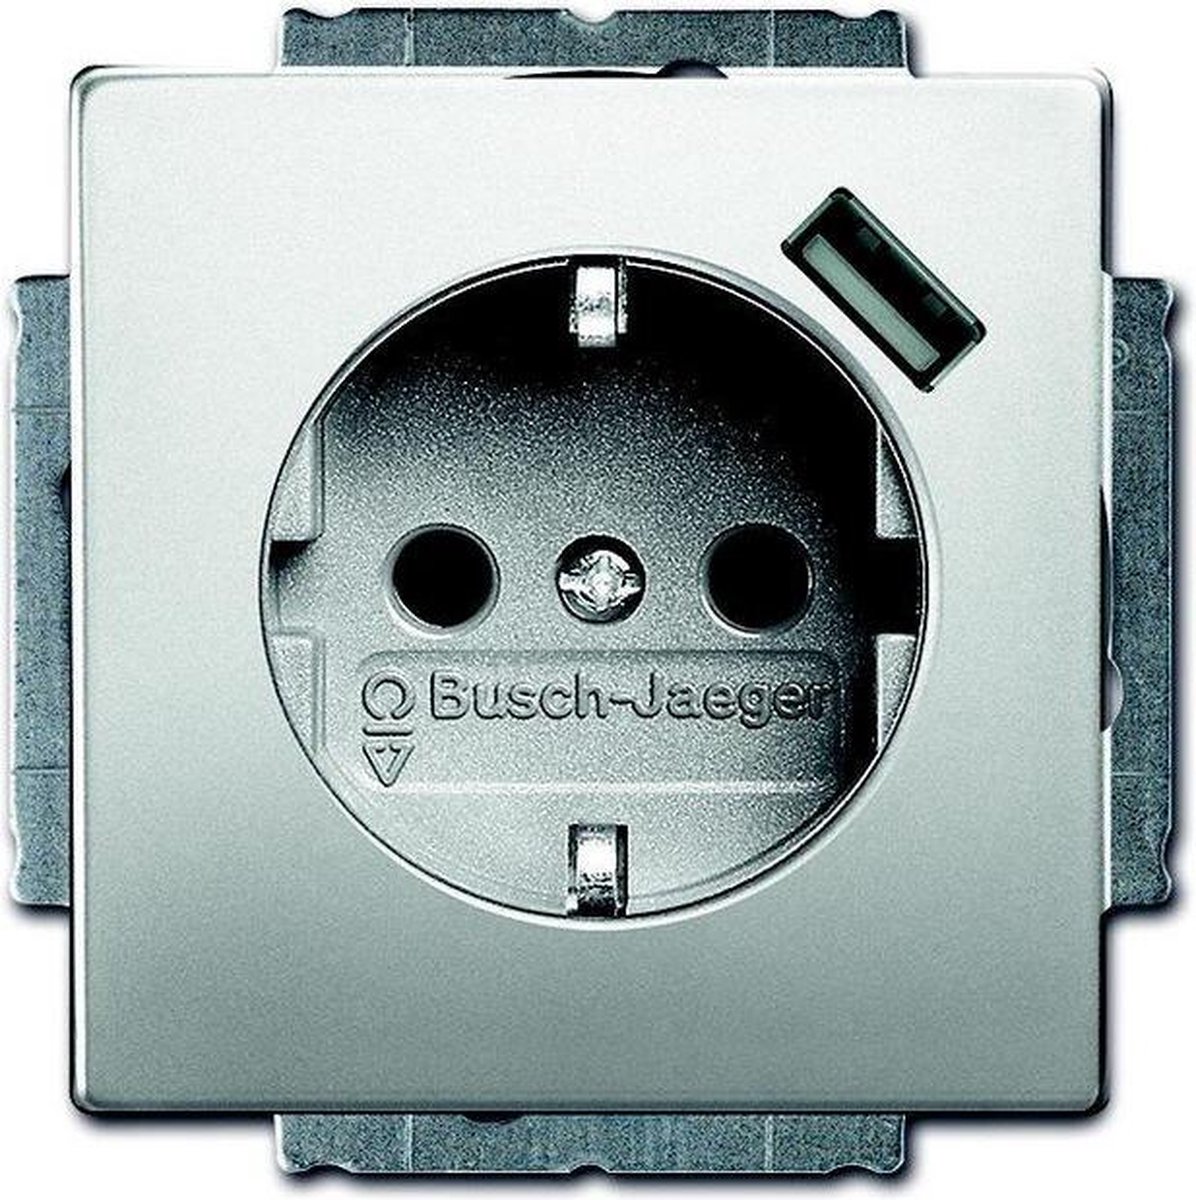 ABB Busch-Jaeger wandcontactdoos met randaarde en USB voeding - Pure stainless steel (20 EUCBUSB-866 BJ) - wandcontactdoos